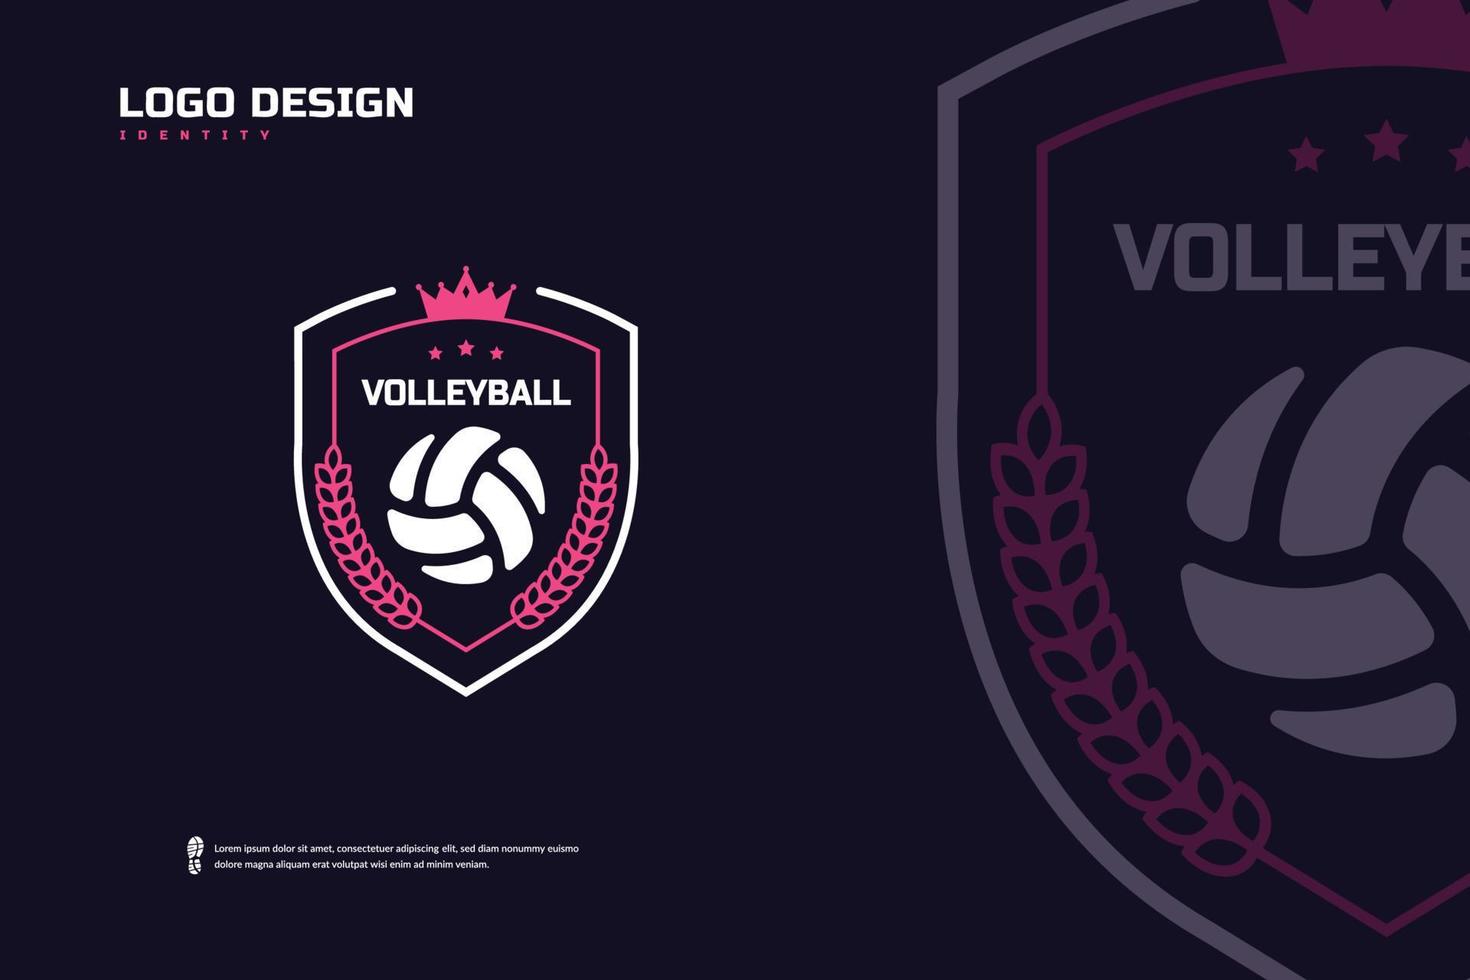 logotipo de la insignia de voleibol, identidad del equipo deportivo. plantilla de diseño de torneo de voleibol, ilustración de vector de insignia de e-sport